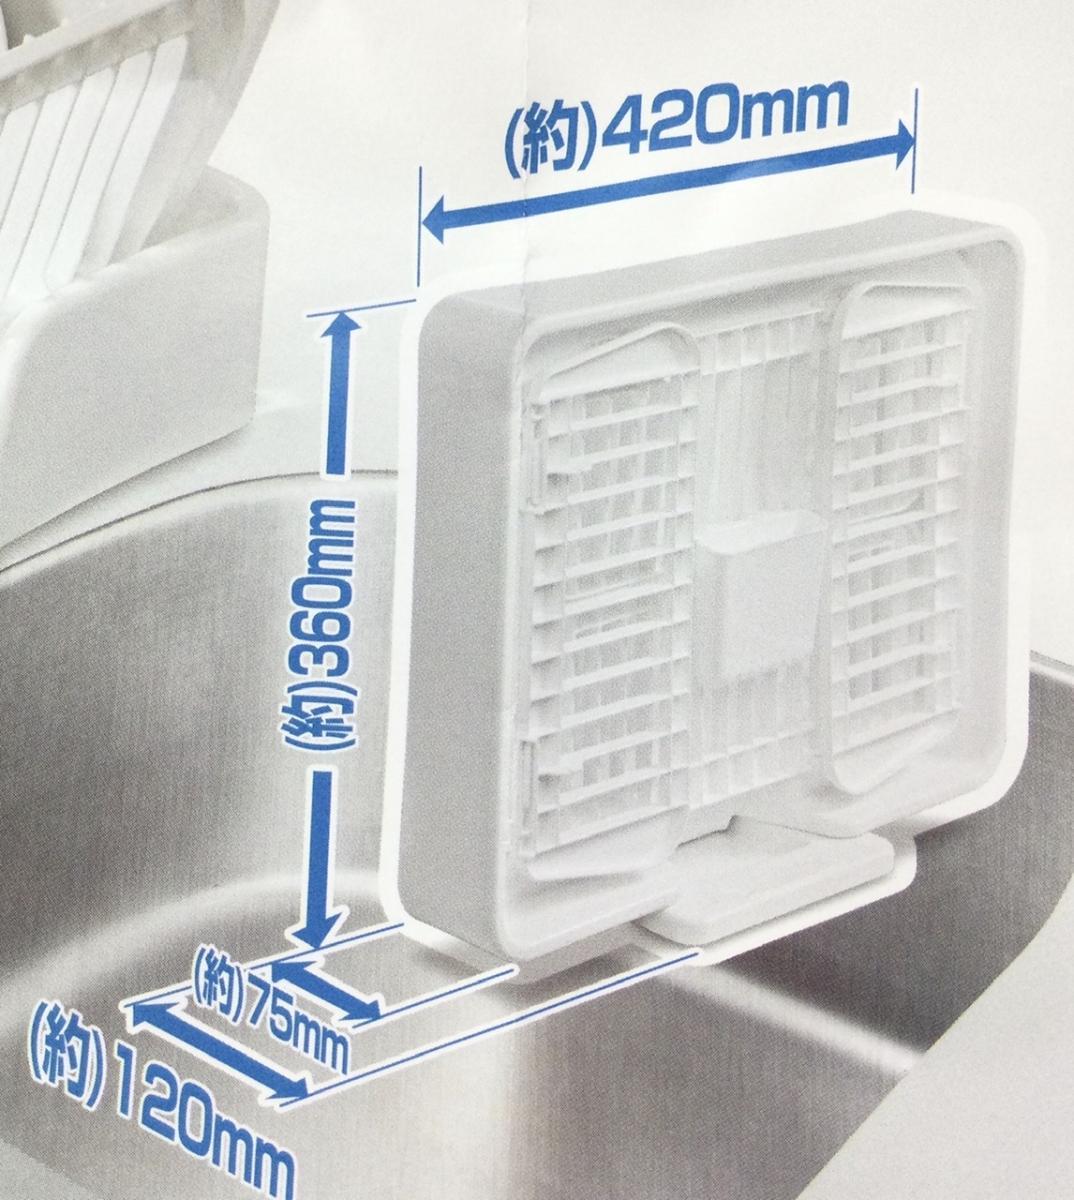  складной сушилка для посуды .ST-1 аккуратный место хранения compact накипь .nmeli. есть трудно сделано в Японии вертикальный type 46.5x36.5x17cm белый 